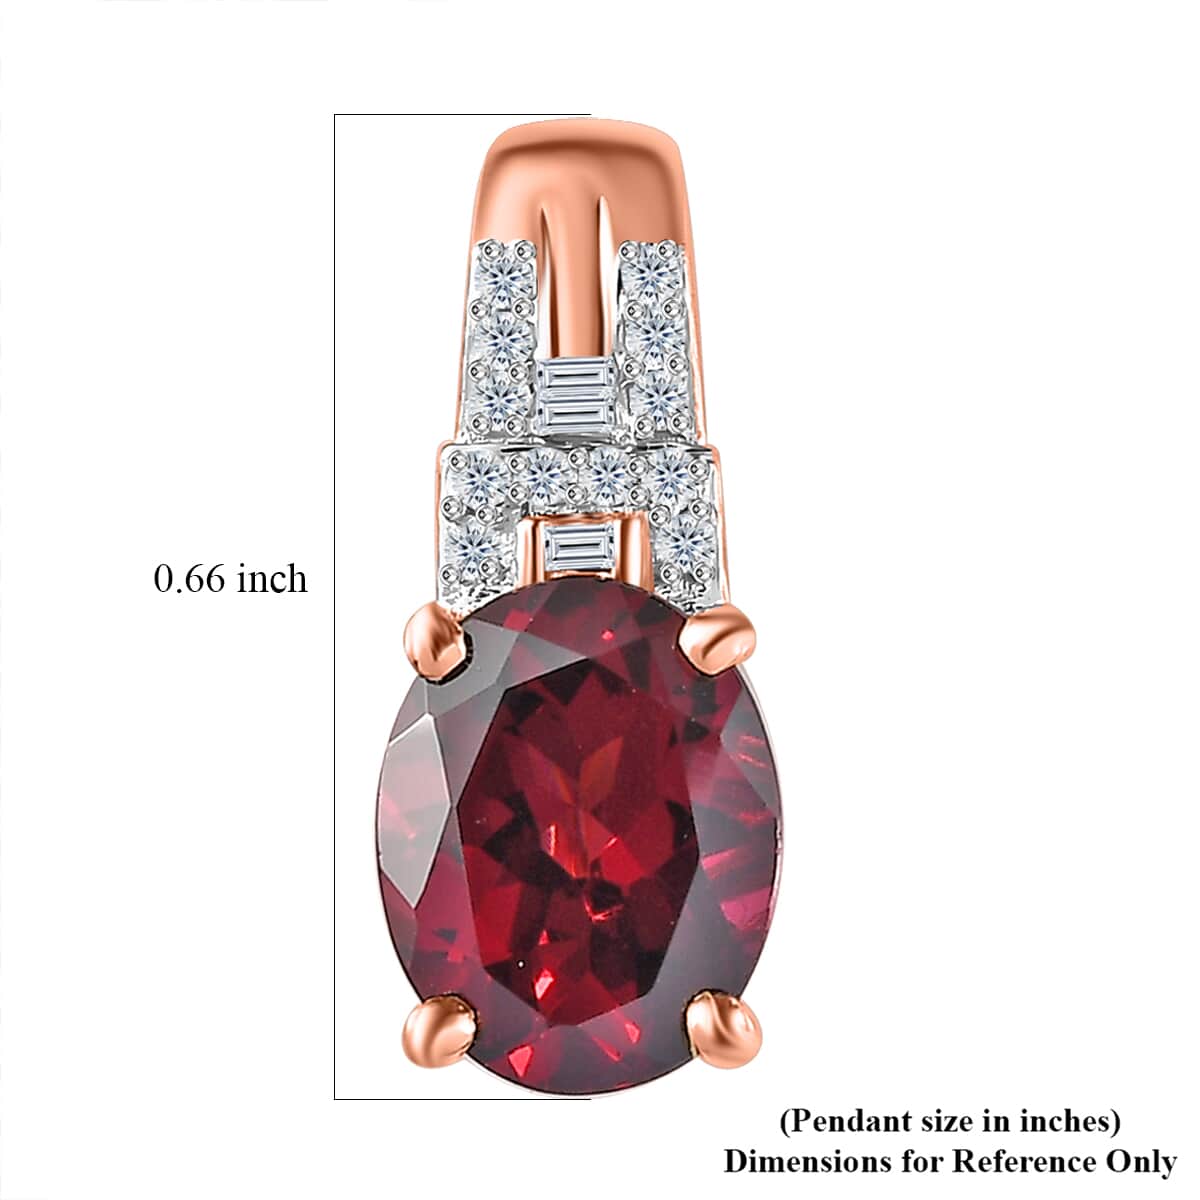 Luxoro 10K Rose Gold Premium Orissa Rhodolite Garnet and G-H I2 Diamond Pendant 2.30 ctw image number 5